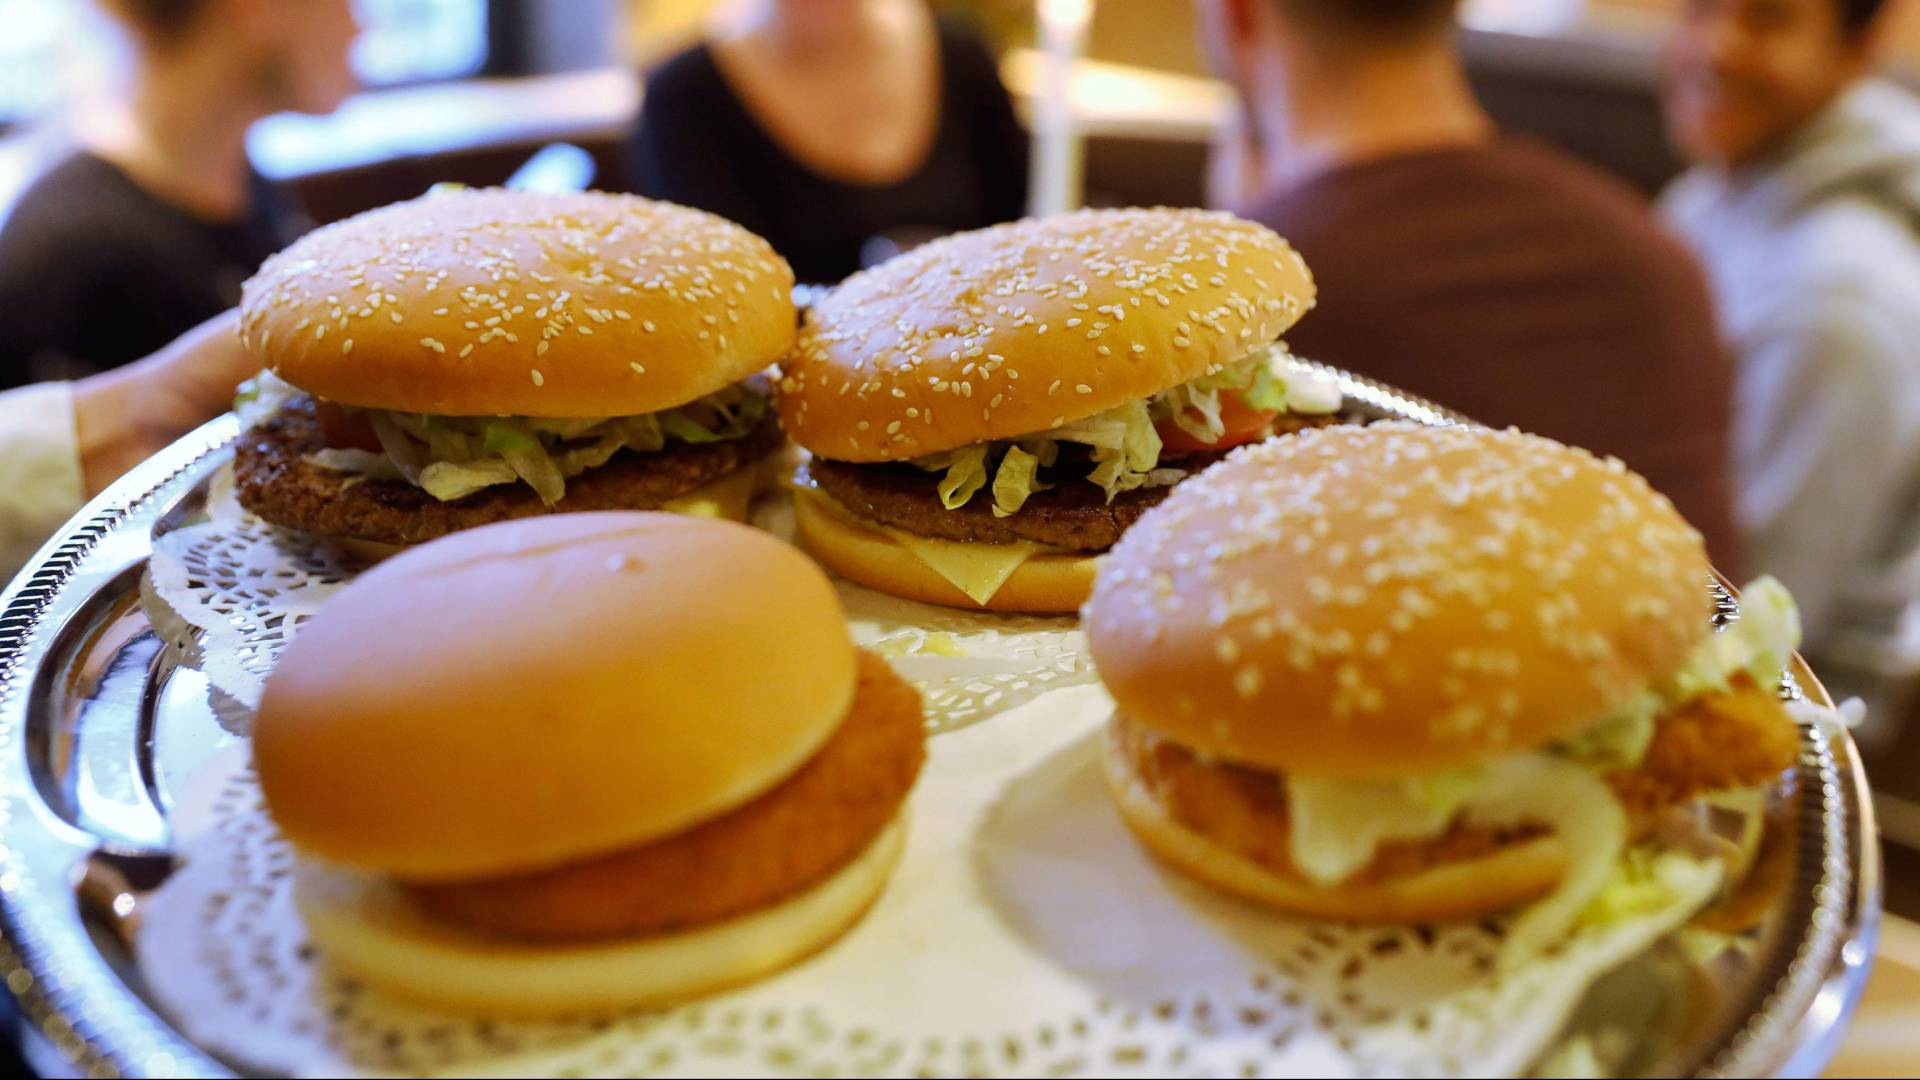 مجلس الوزراء في هولندا يدرس قانوناً للتقليل من مطاعم الوجبات السريعة